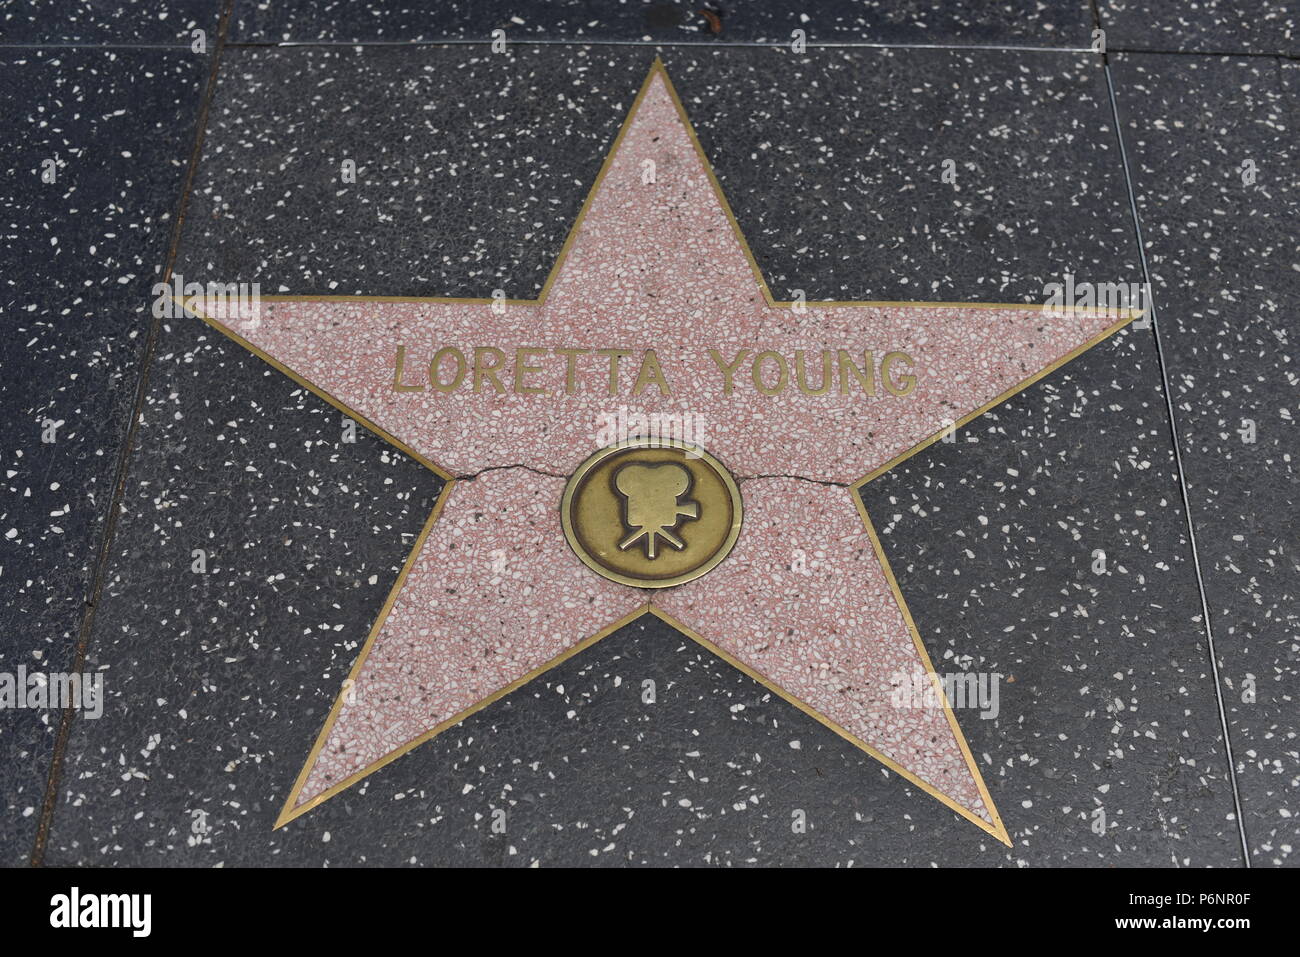 HOLLYWOOD, CA - 29 Giugno: Loretta Young stella sulla Hollywood Walk of Fame in Hollywood, la California il 29 giugno 2018. Foto Stock